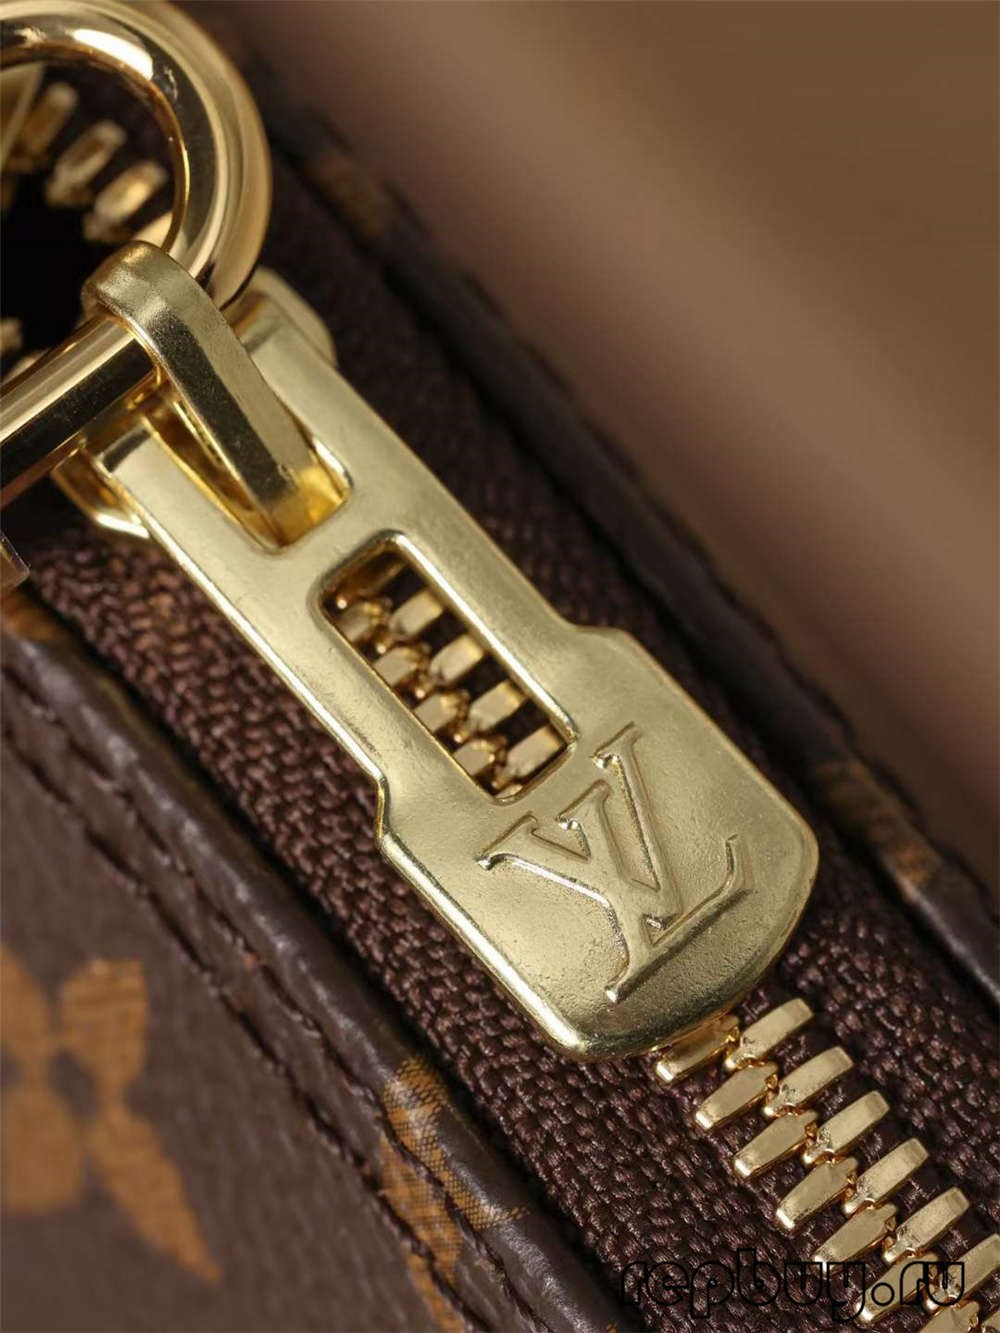 Louis Vuitton M53152 Alma BB အရည်အသွေးမြင့် ပုံတူအိတ်များ (2022 နောက်ဆုံးထွက်)- အကောင်းဆုံး အရည်အသွေး အတု Louis Vuitton Bag အွန်လိုင်းစတိုး၊ ပုံစံတူ ဒီဇိုင်နာအိတ် ru